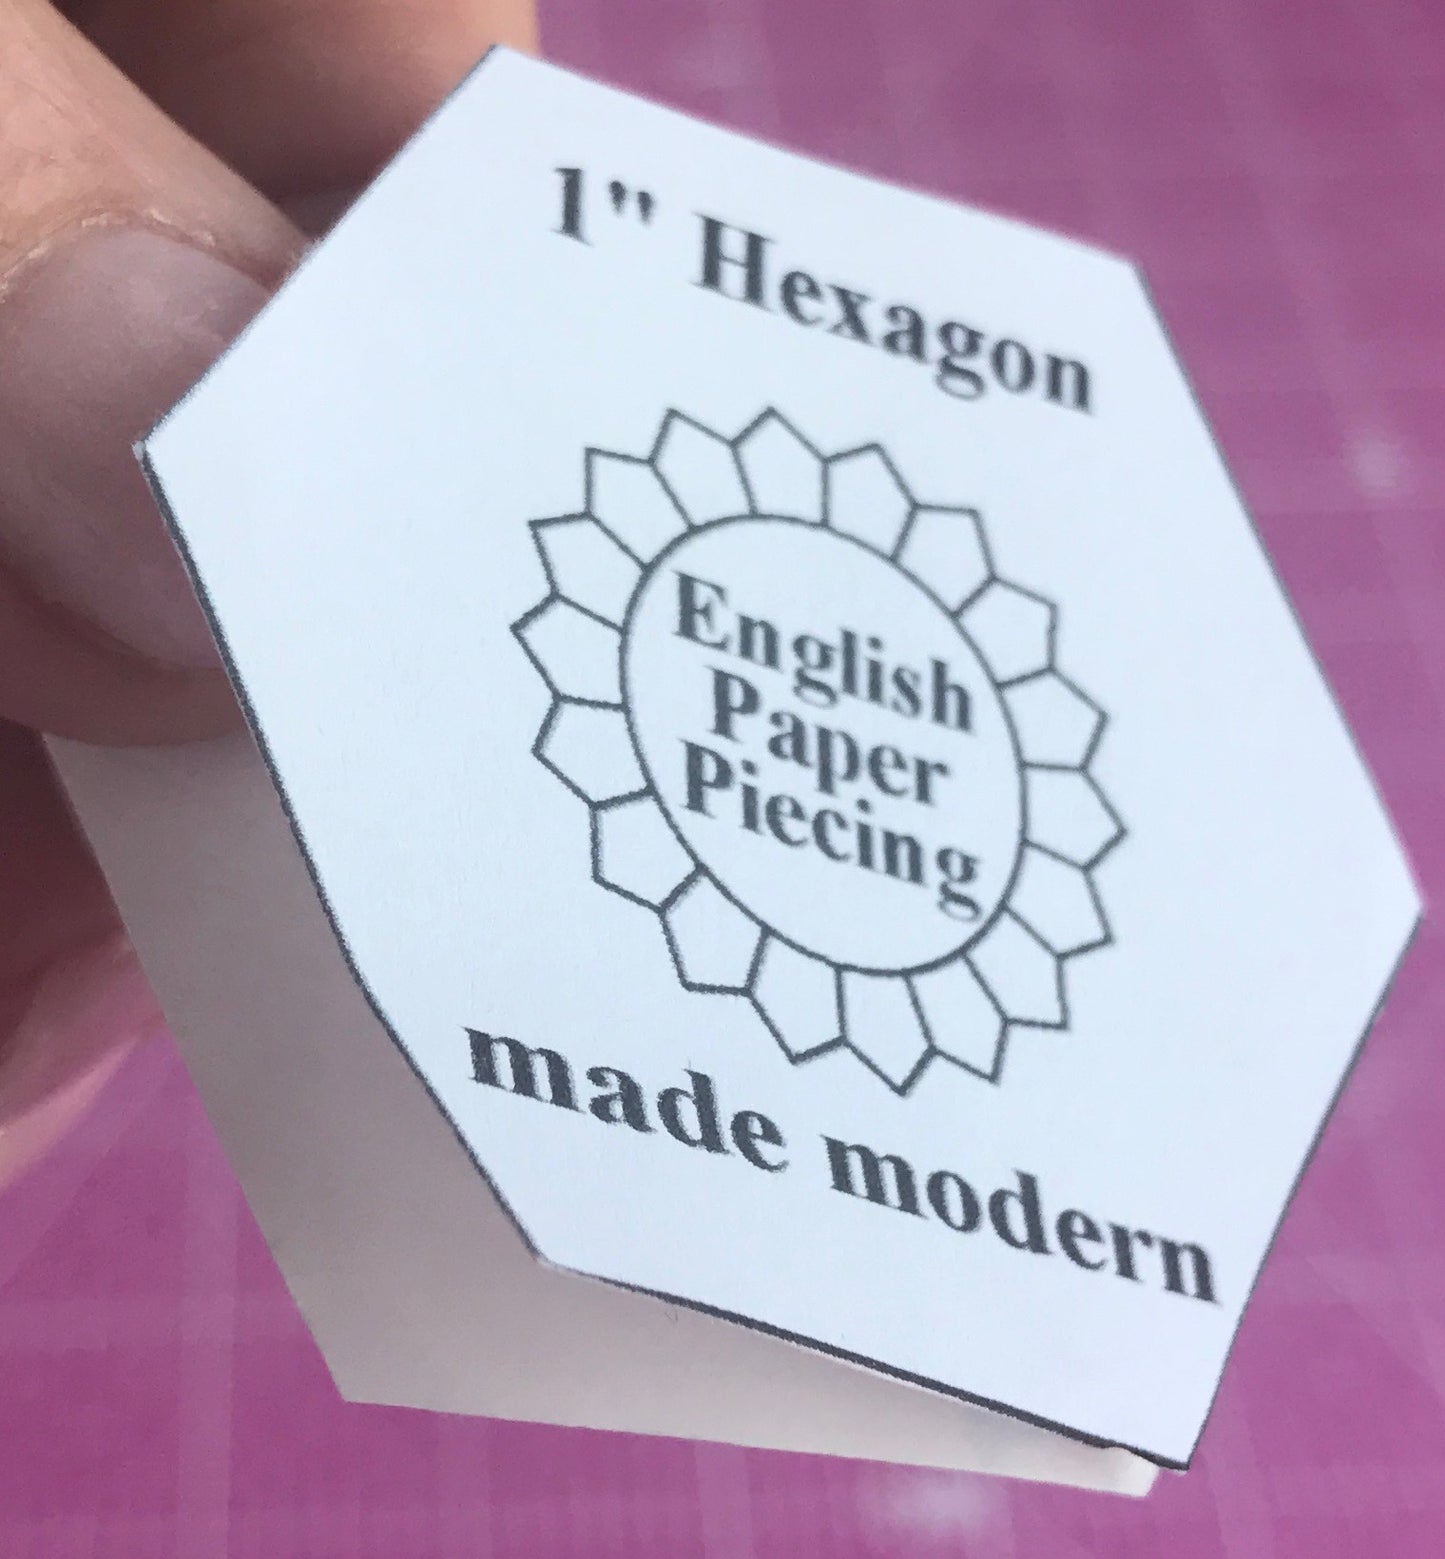 Peel paper backing English Paper PIecing Made Modern